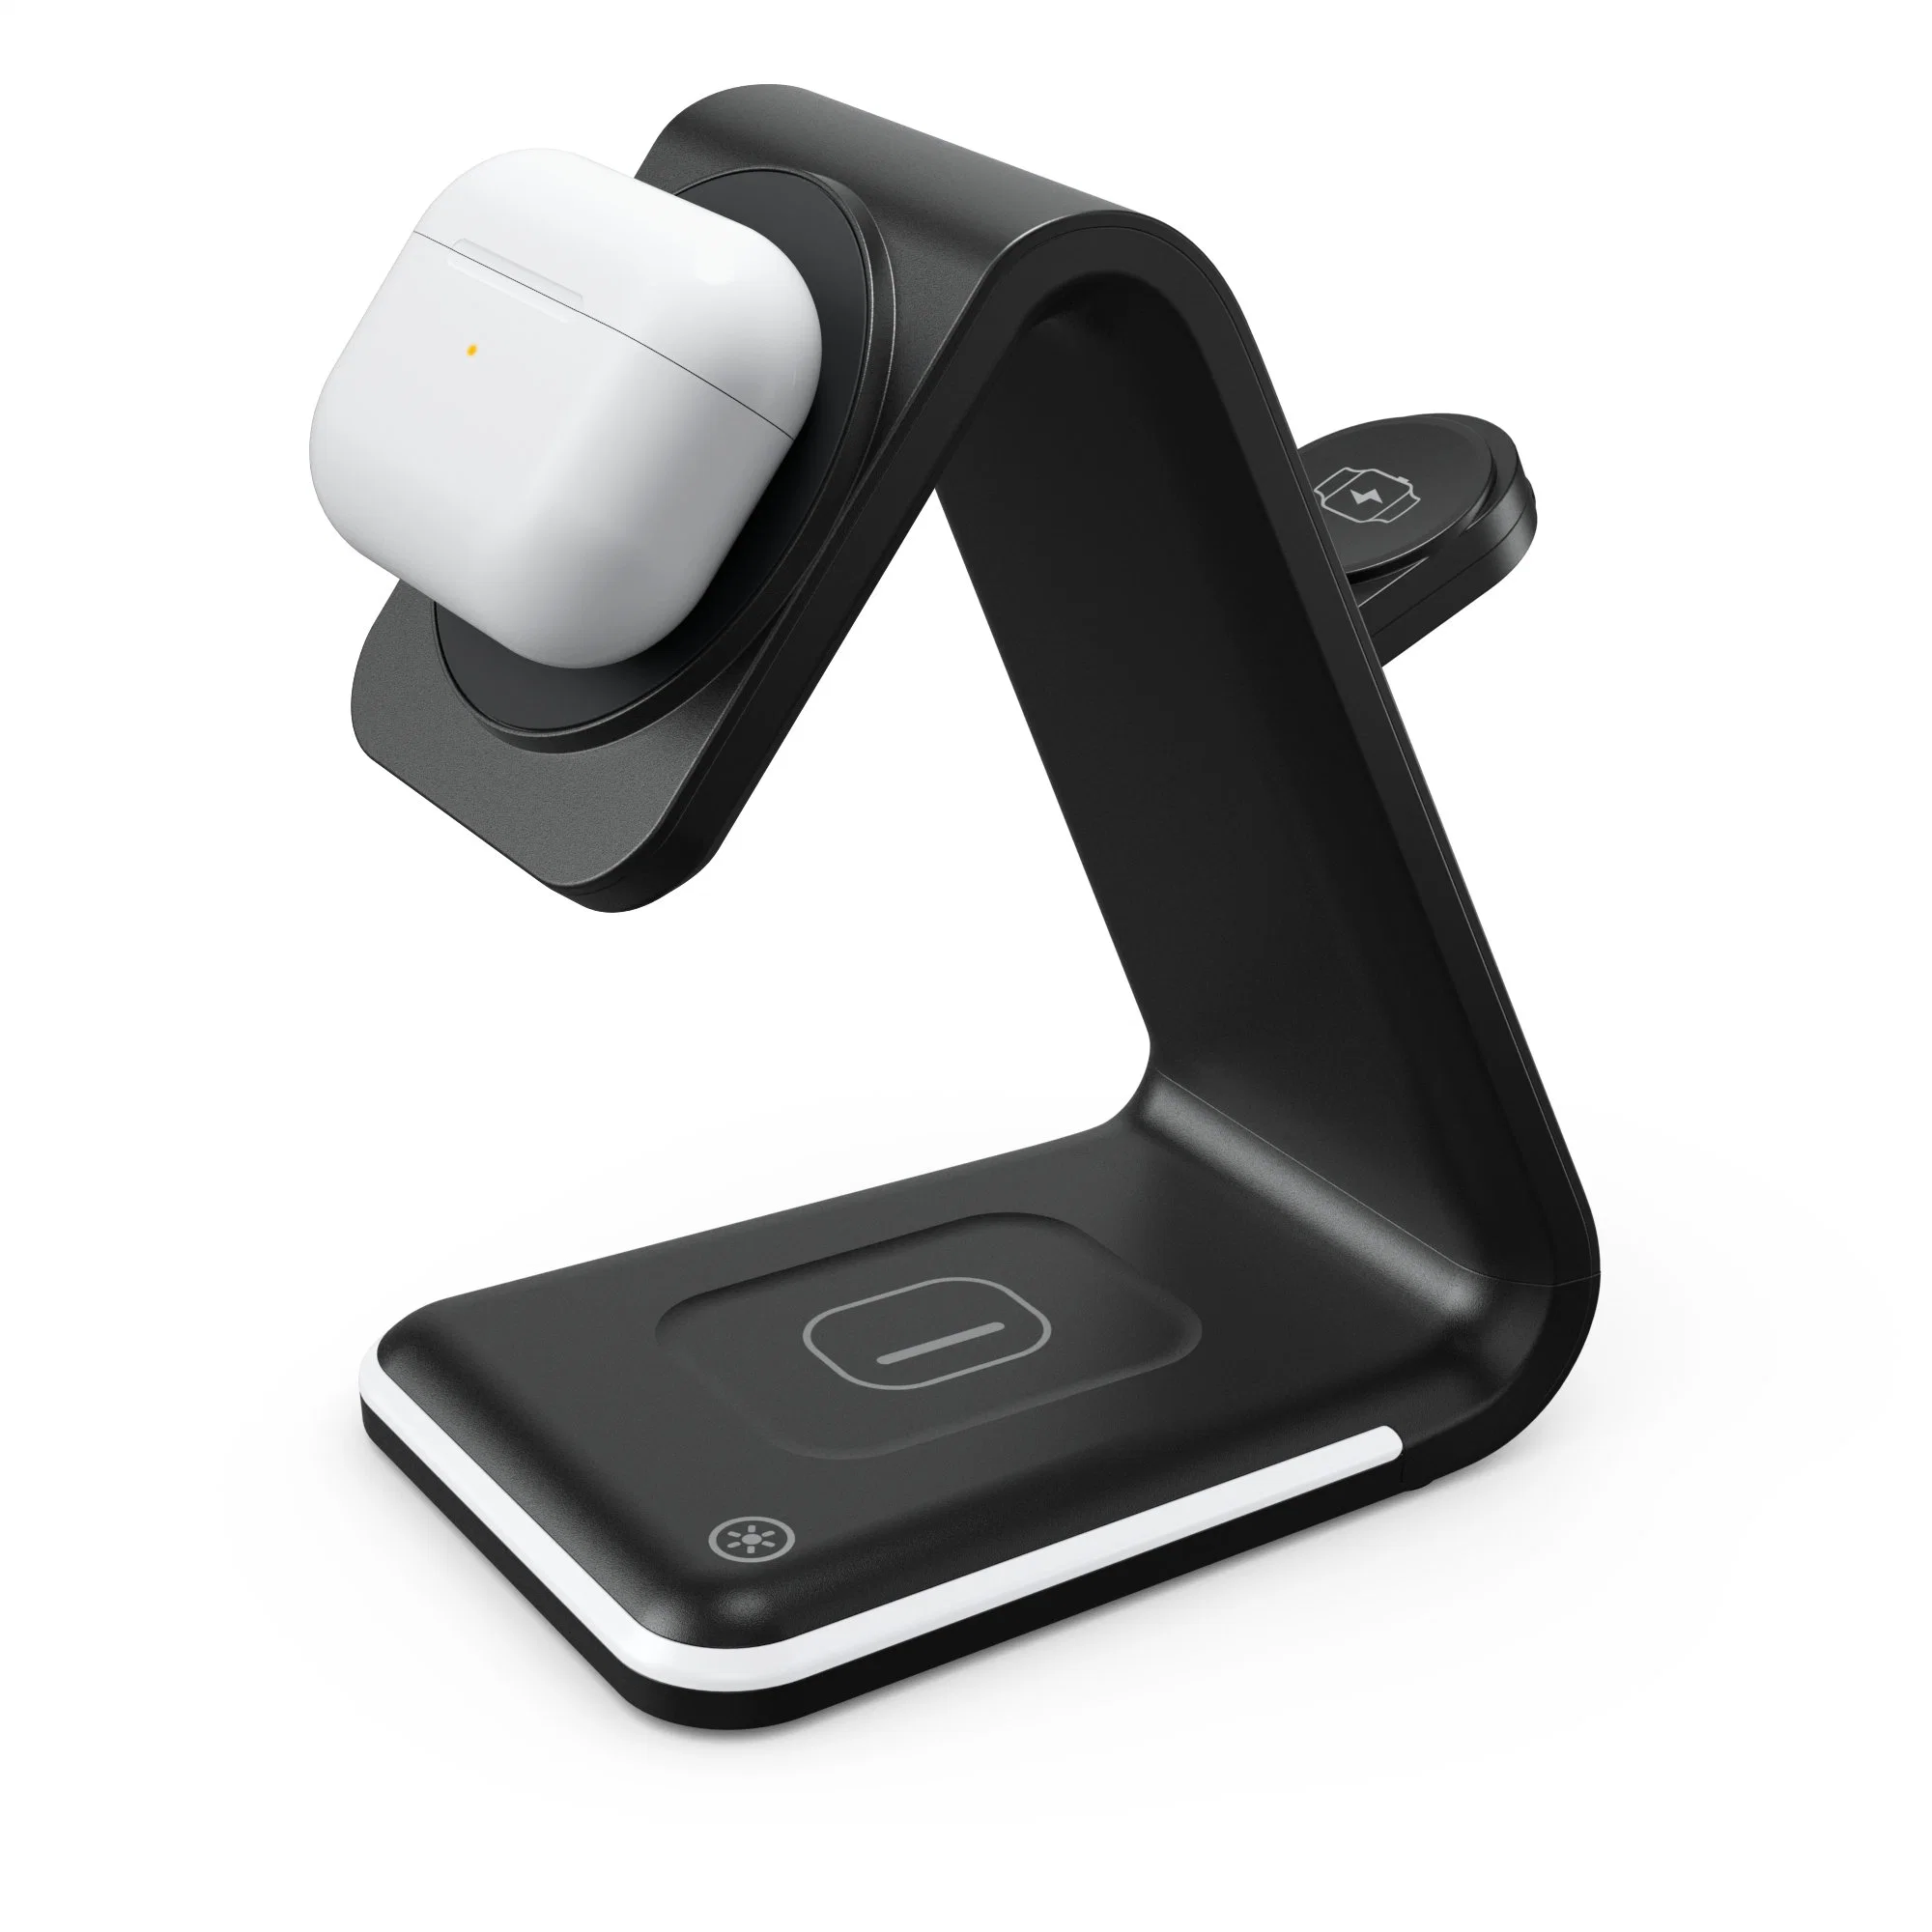 Chargeur de téléphone portable 5 en 1 chargeur rapide magnétique pour montre, casque, téléphone portable, lumière et réveil chargeur rapide sans fil de bureau noir et blanc